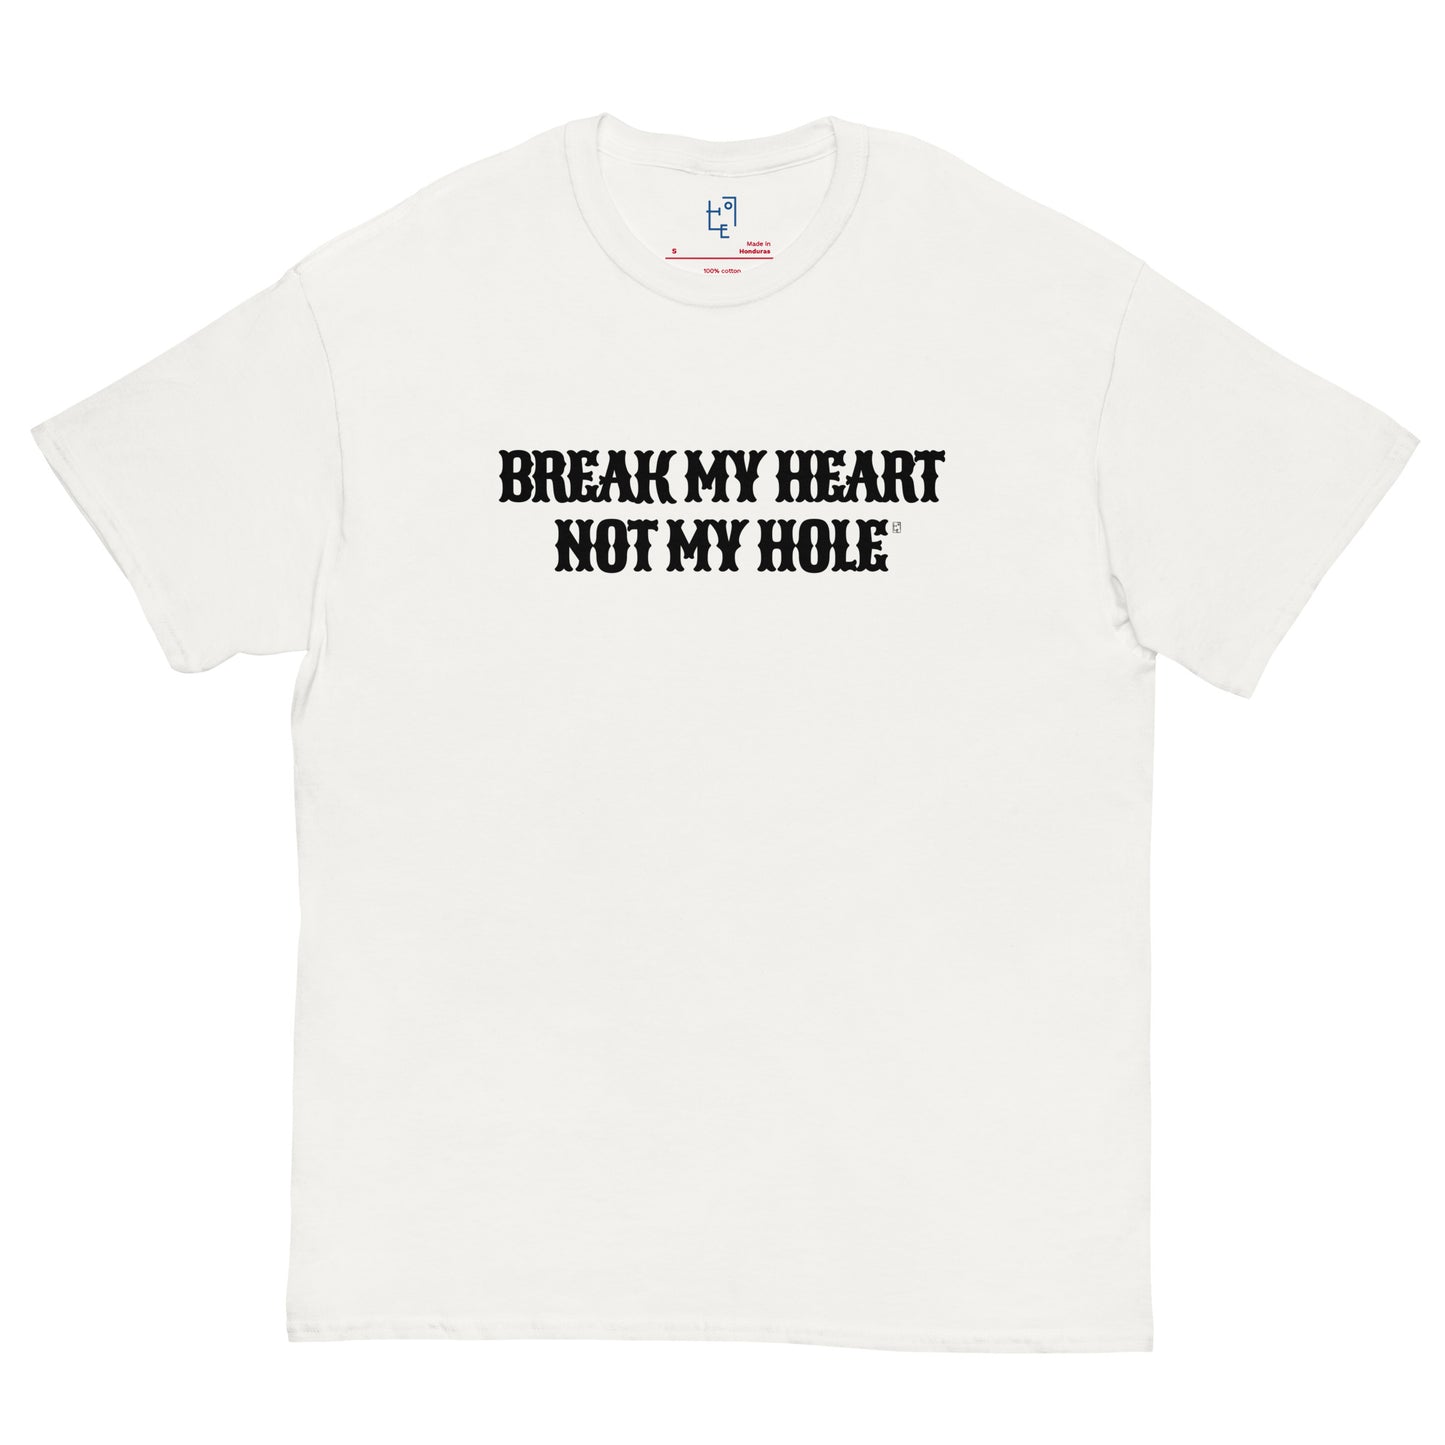 BREAK MY HEART T